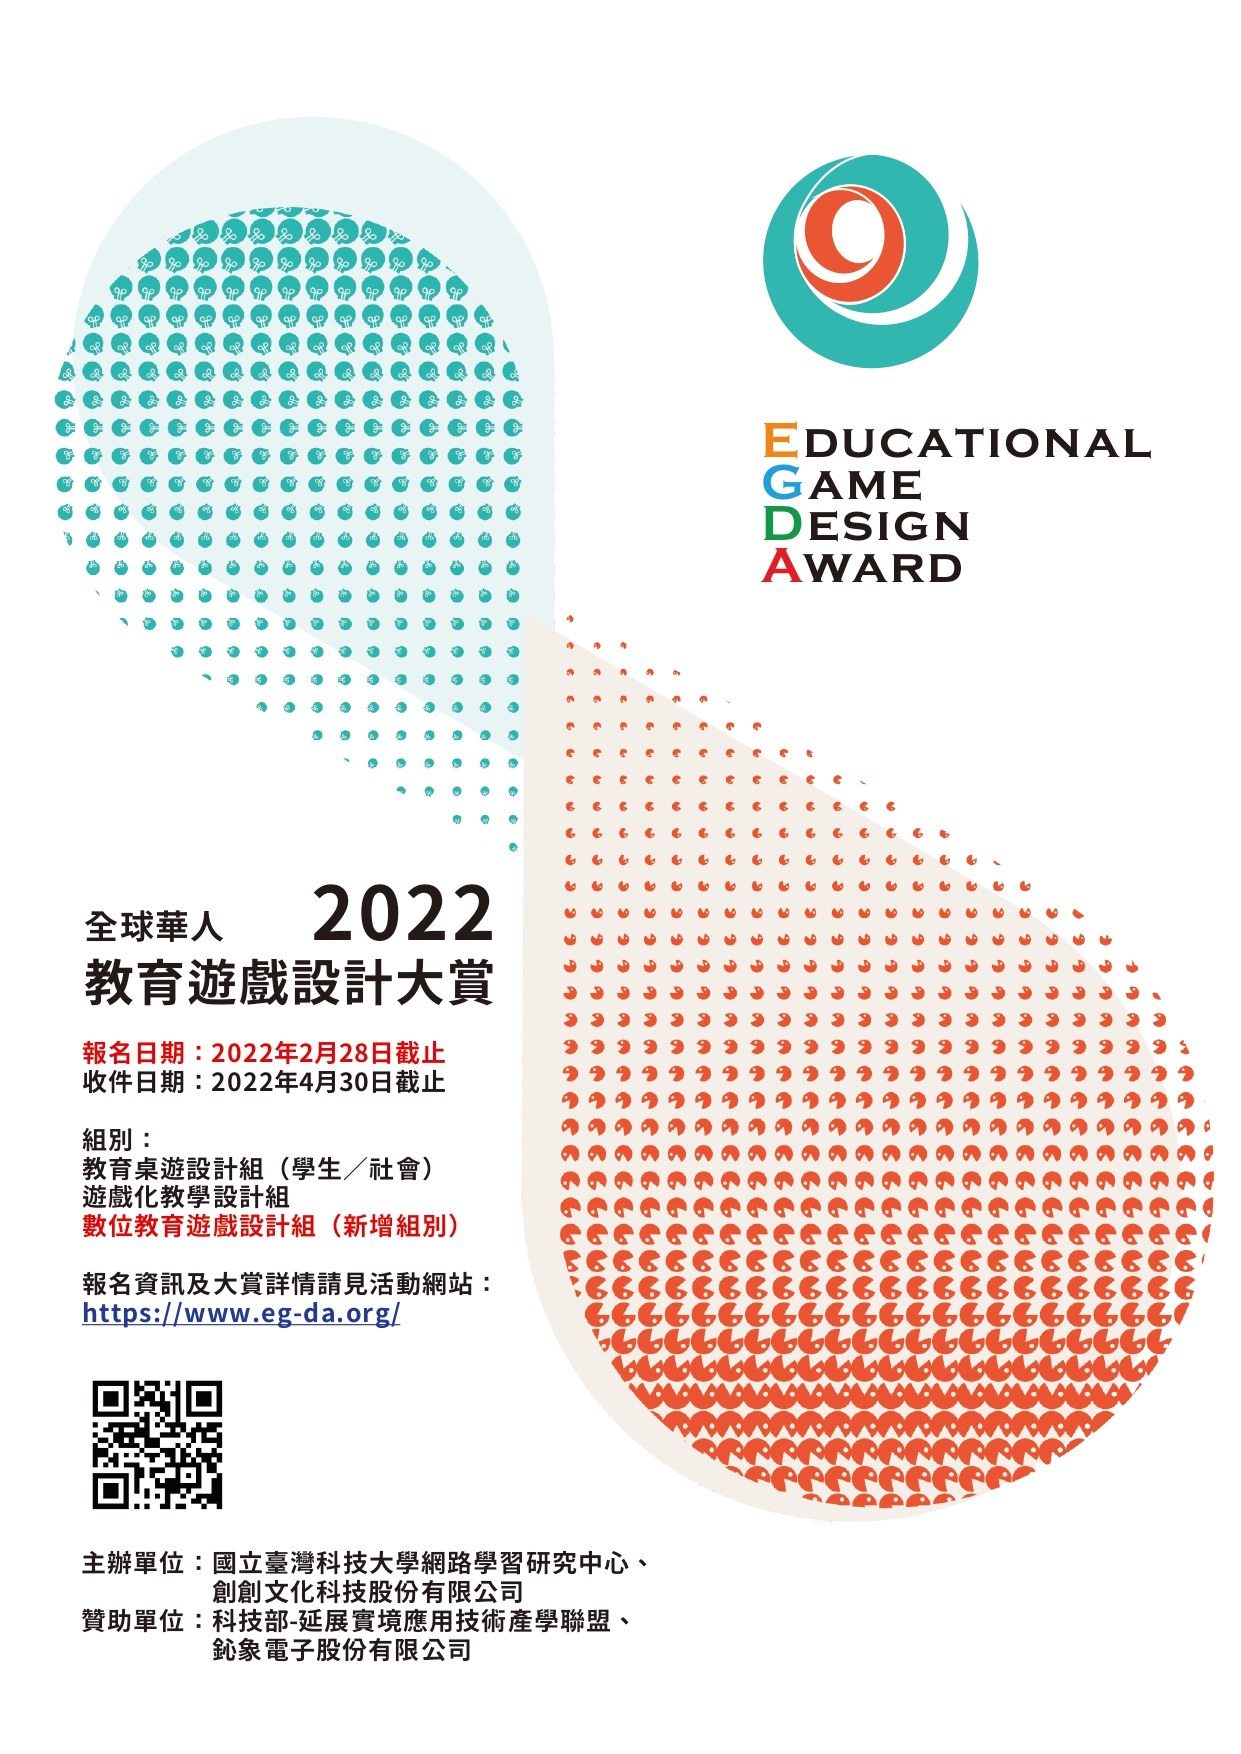 轉知「第三屆 2 0 2 2全球華人教育遊戲設計大賞(2022 Educational Game Design Award)」競賽辦法